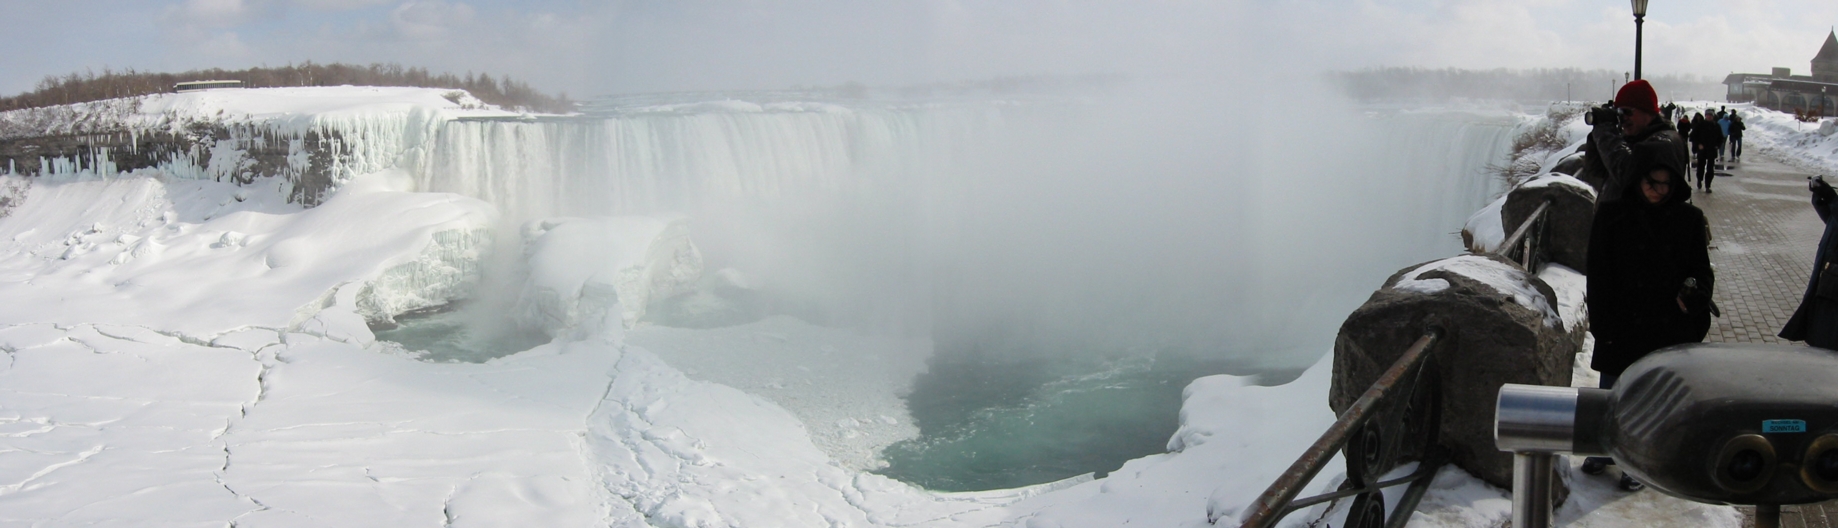 021-Canadian_Falls_Panoramic.jpg